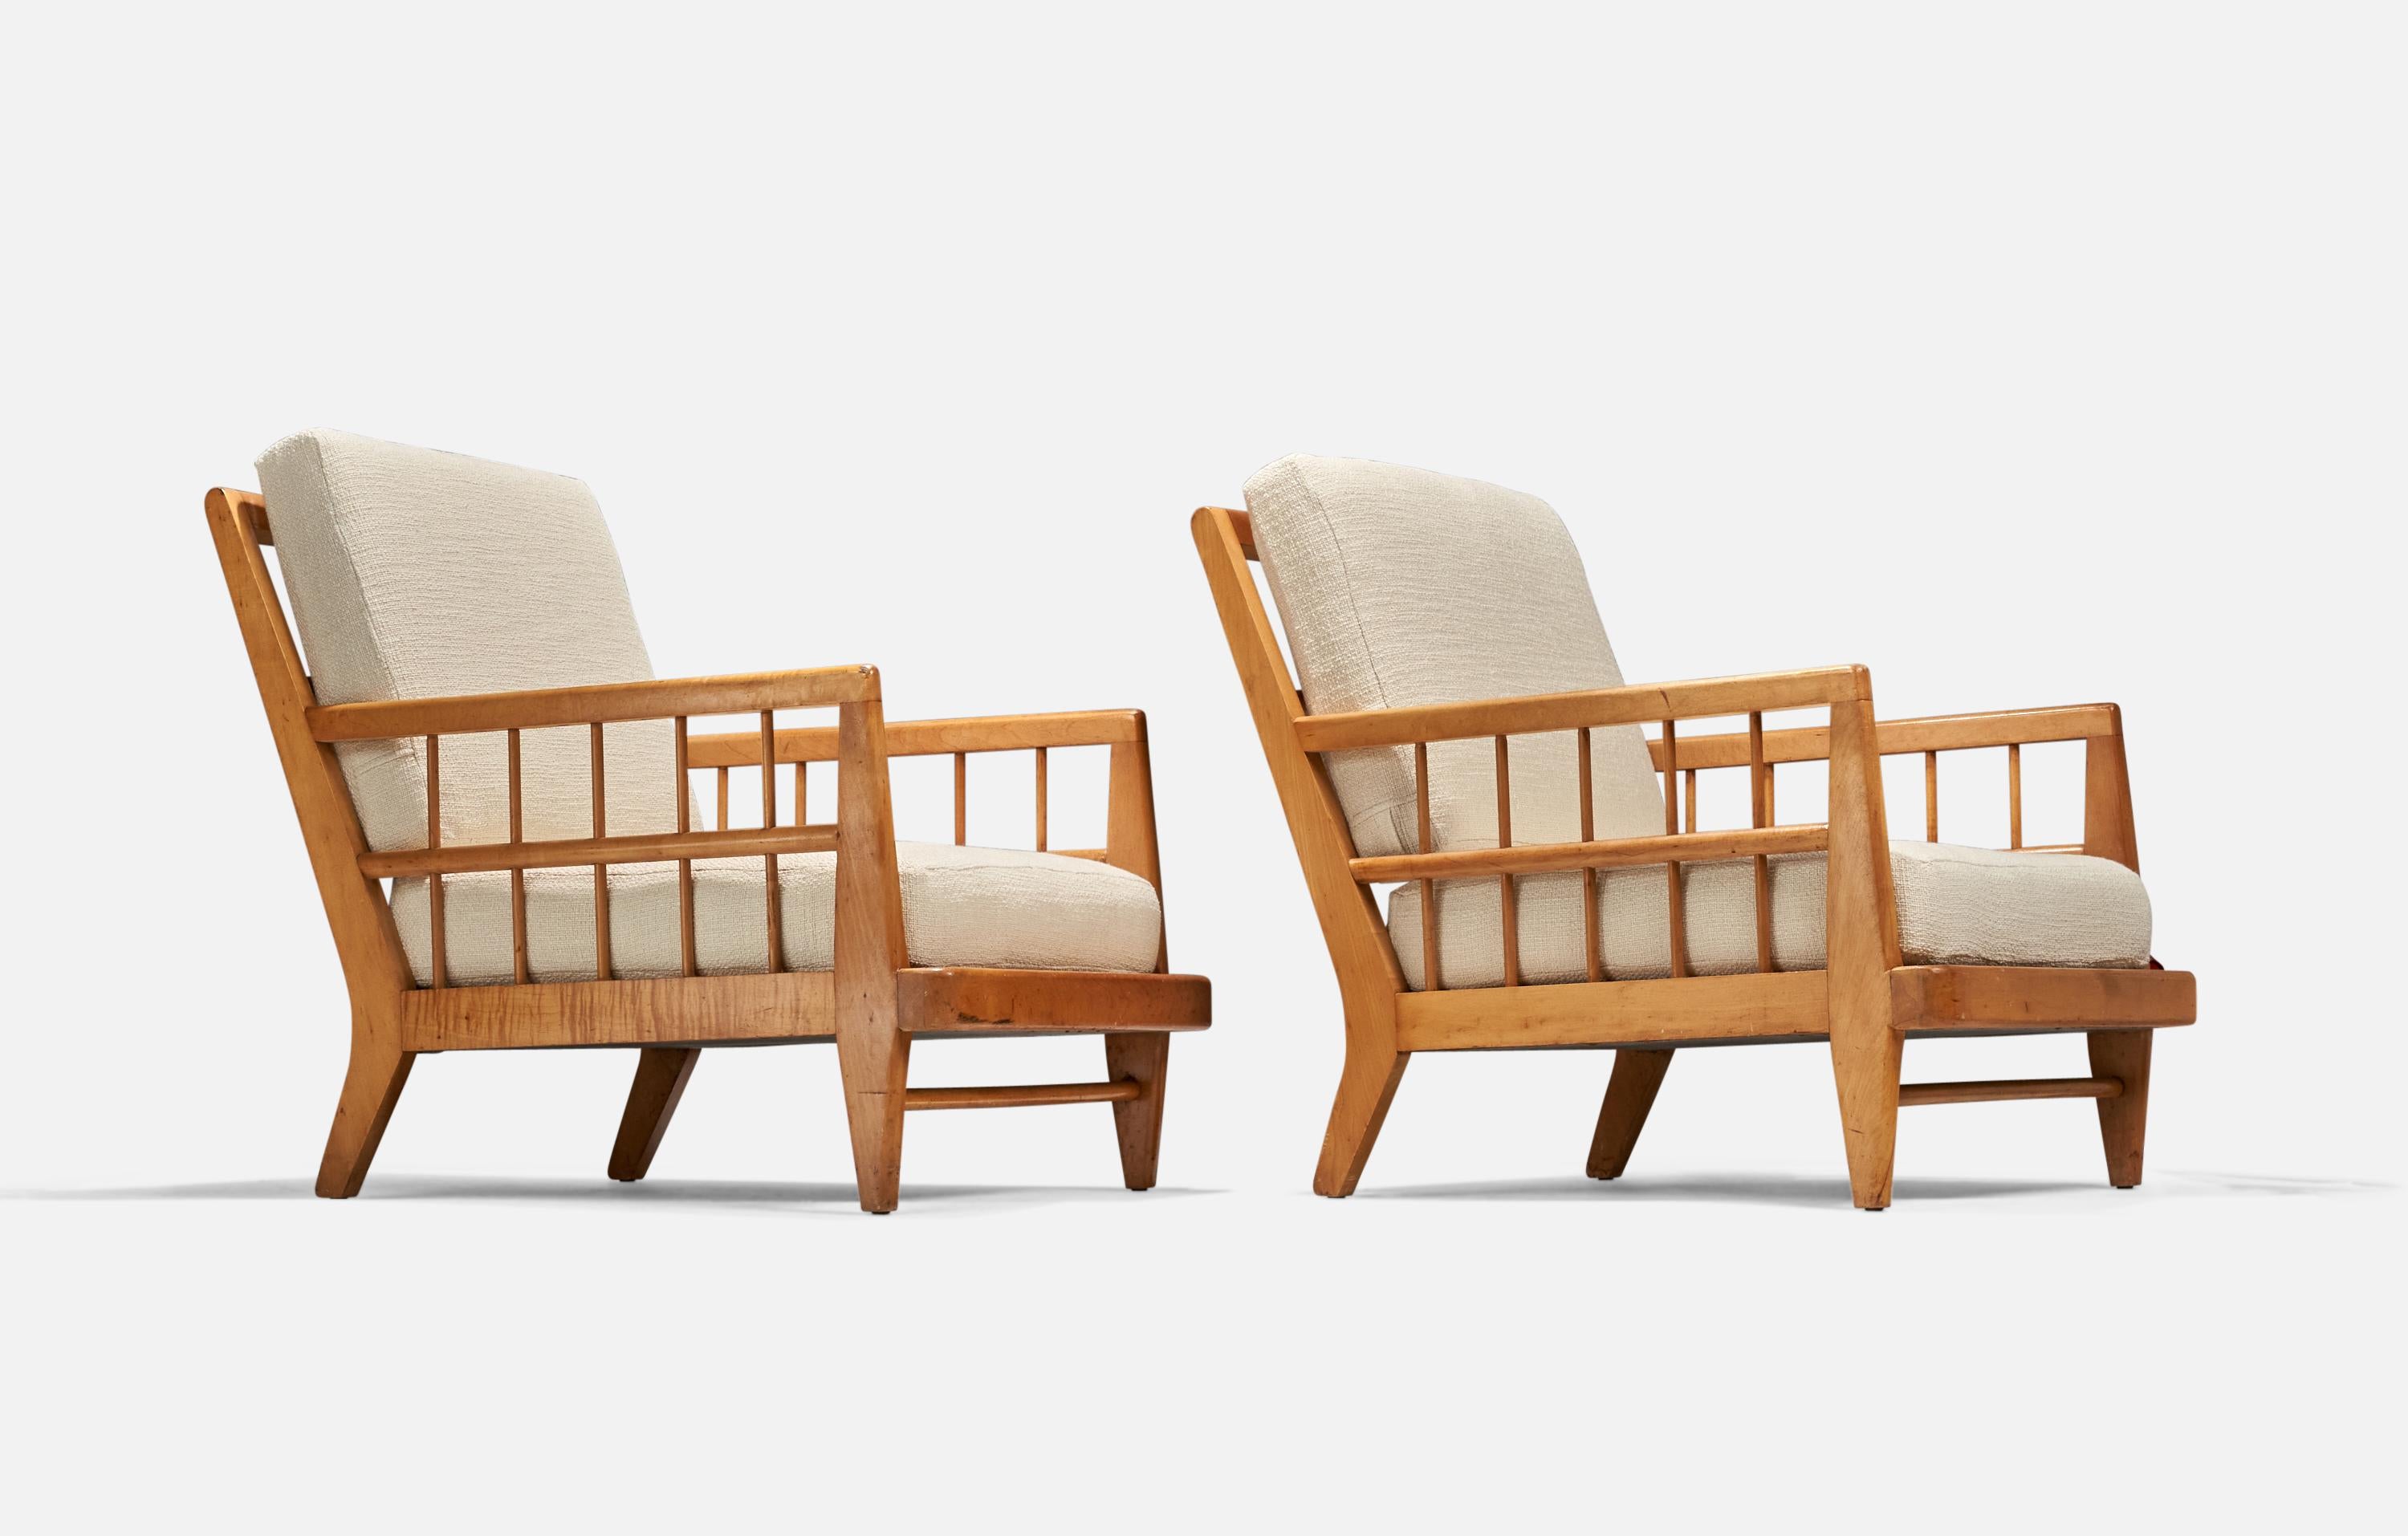 Paire de chaises longues en hêtre et tissu blanc conçues par Edward Wormley et produites par Drexel, États-Unis, années 1940.

Mesure : hauteur du siège (pouces) : 14.5.